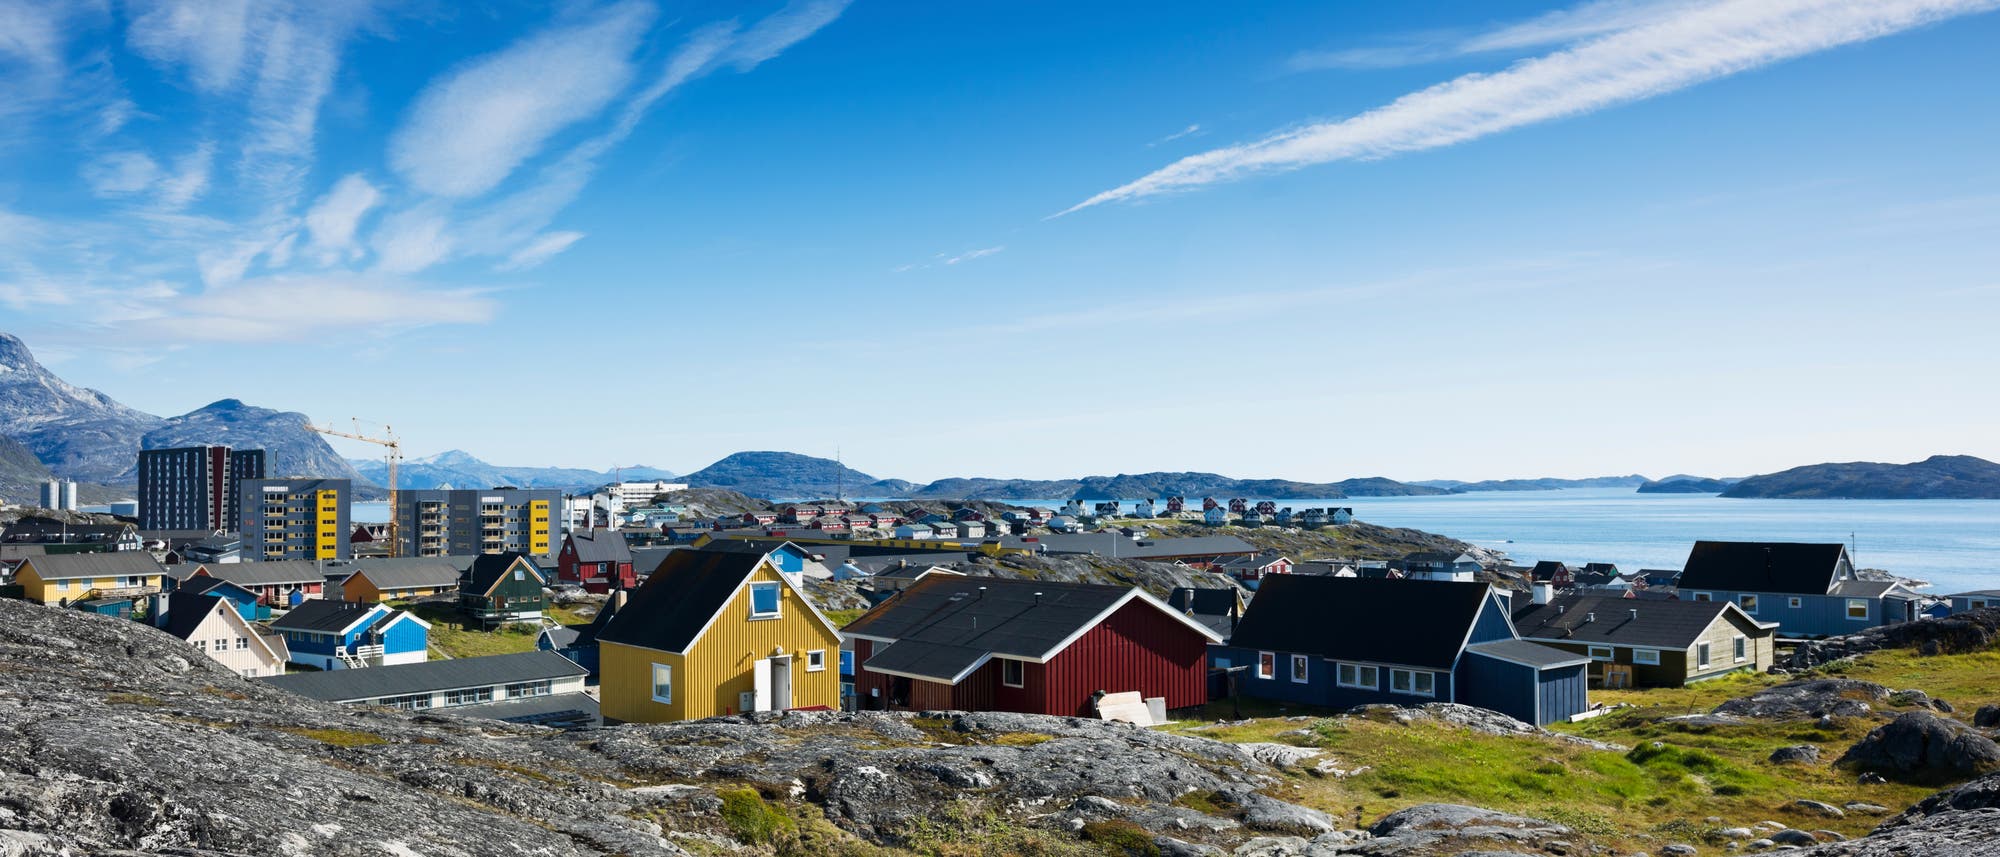 Die grönländische Inselhauptstadt Nuuk erlebte einige Hitzewellen dieses Jahr